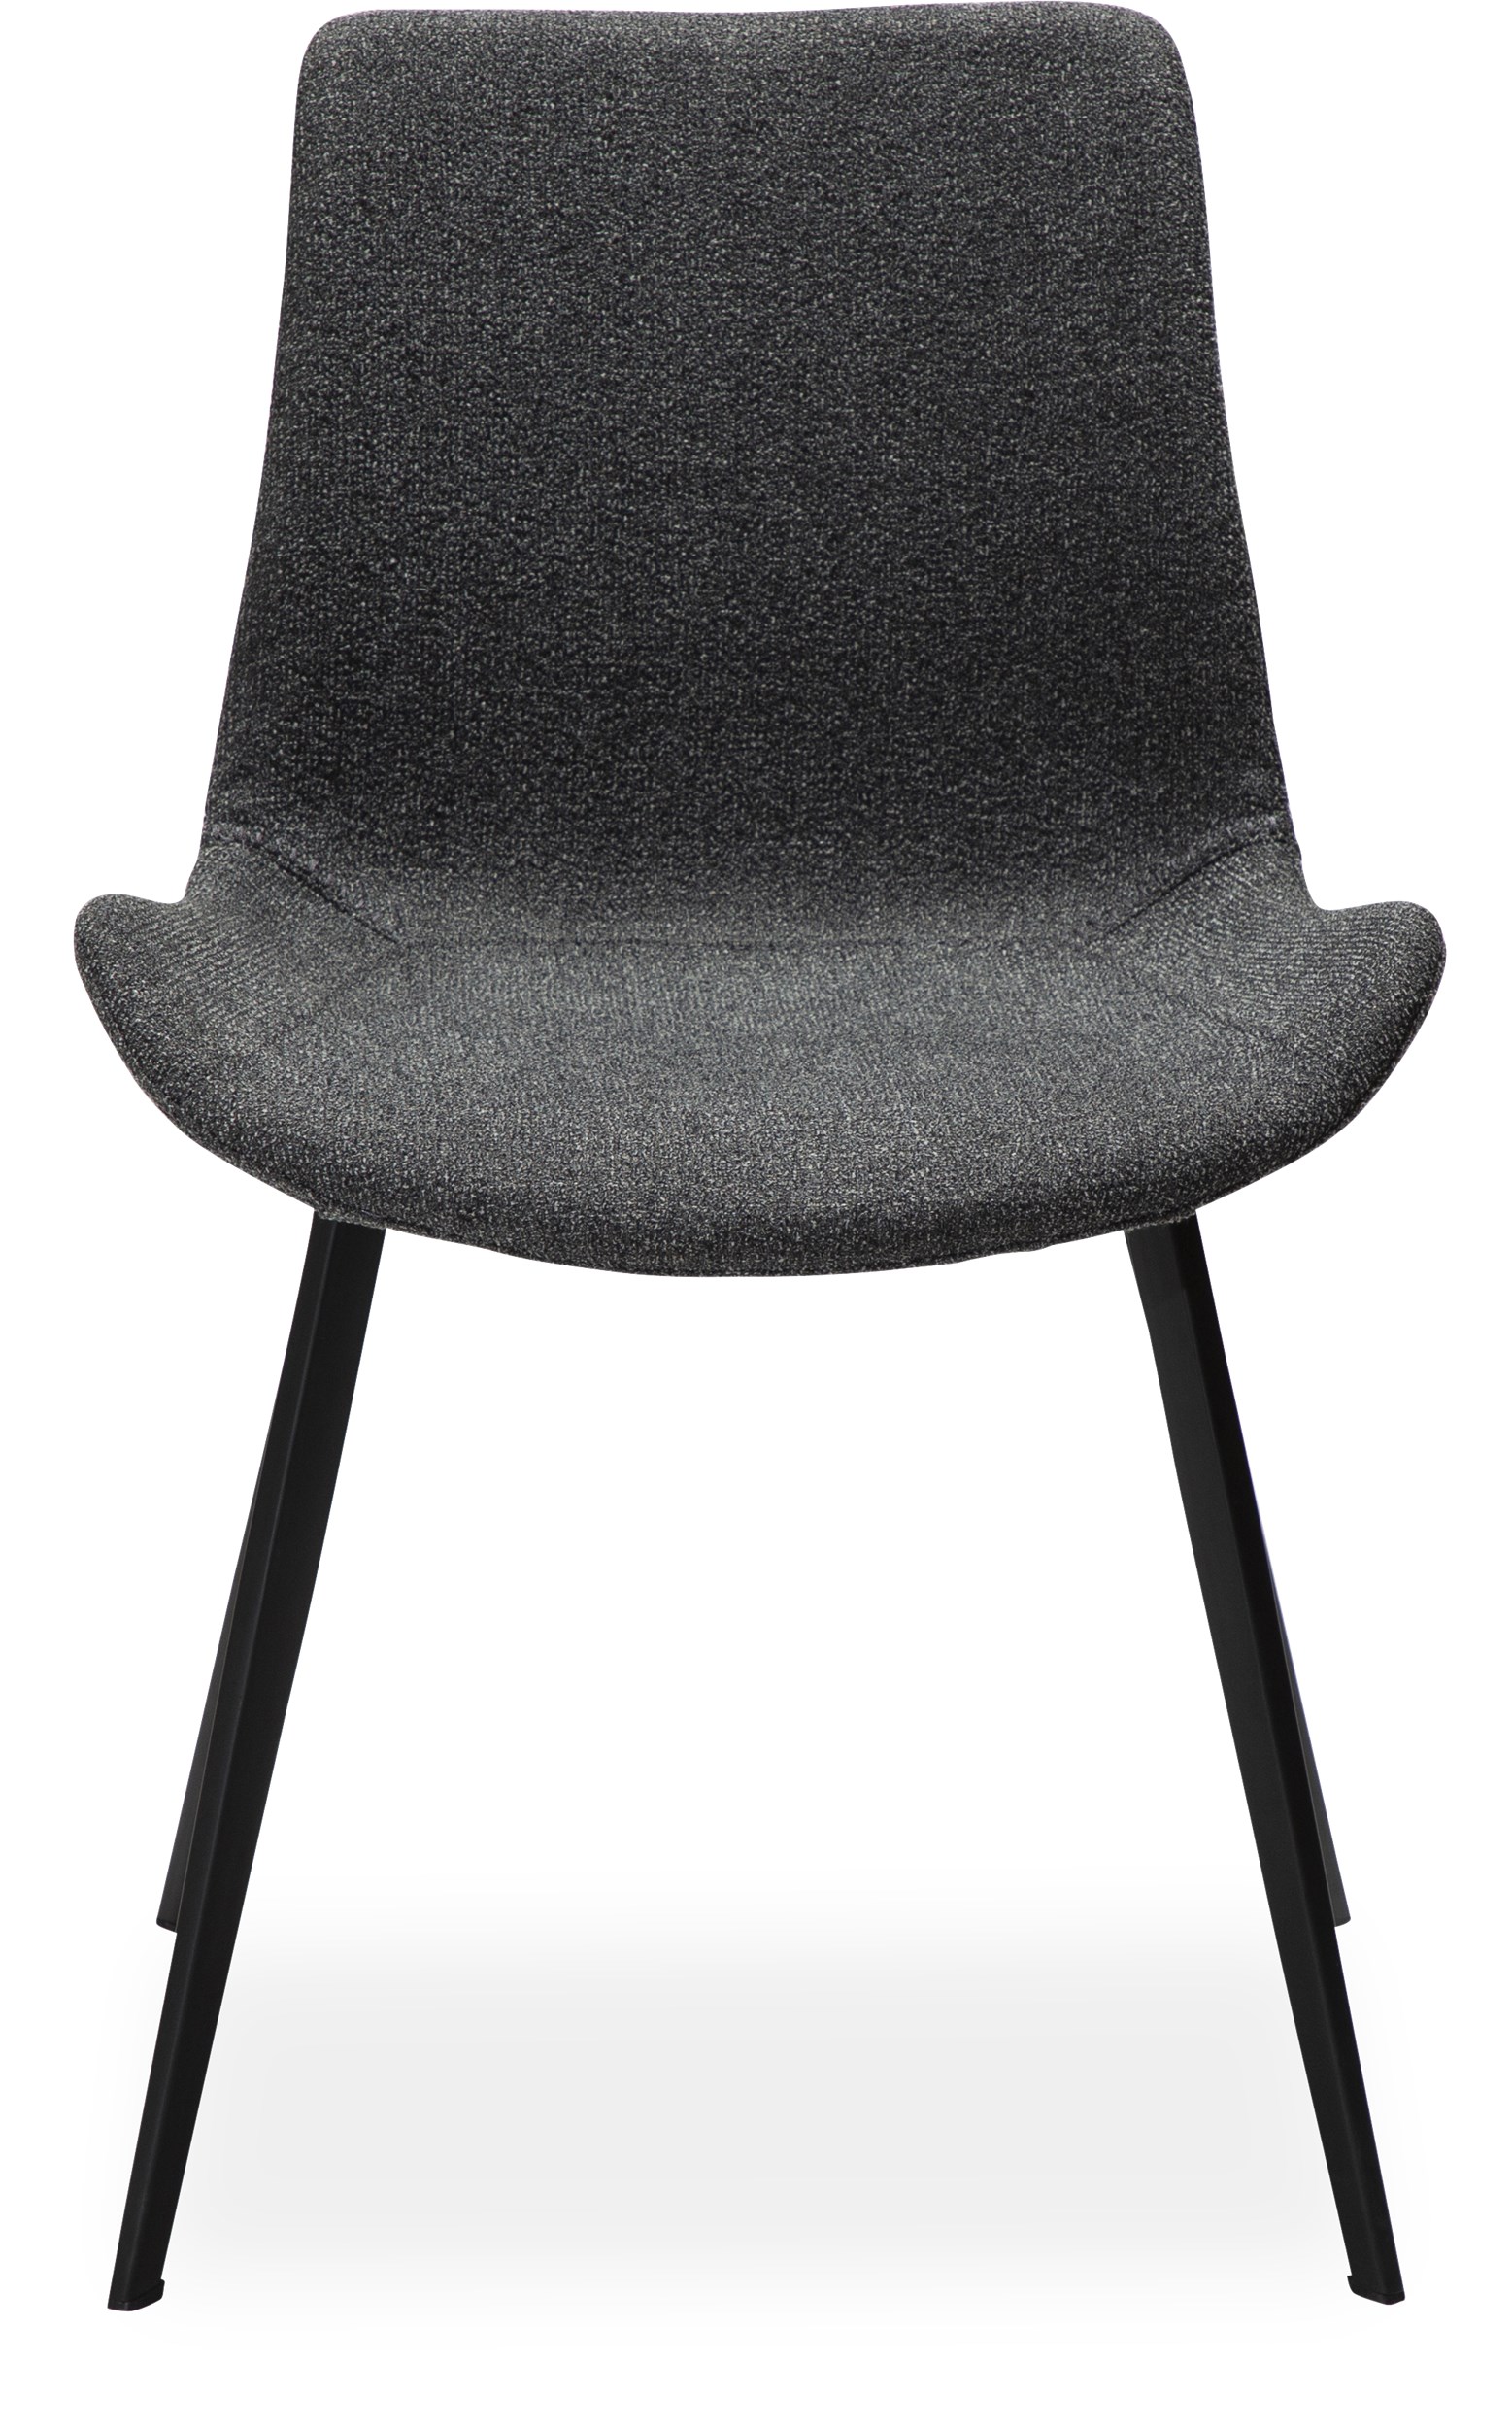 Hype Spisebordsstol - Sæde i pebble grey bouclé stof og ben i sortlakeret metal